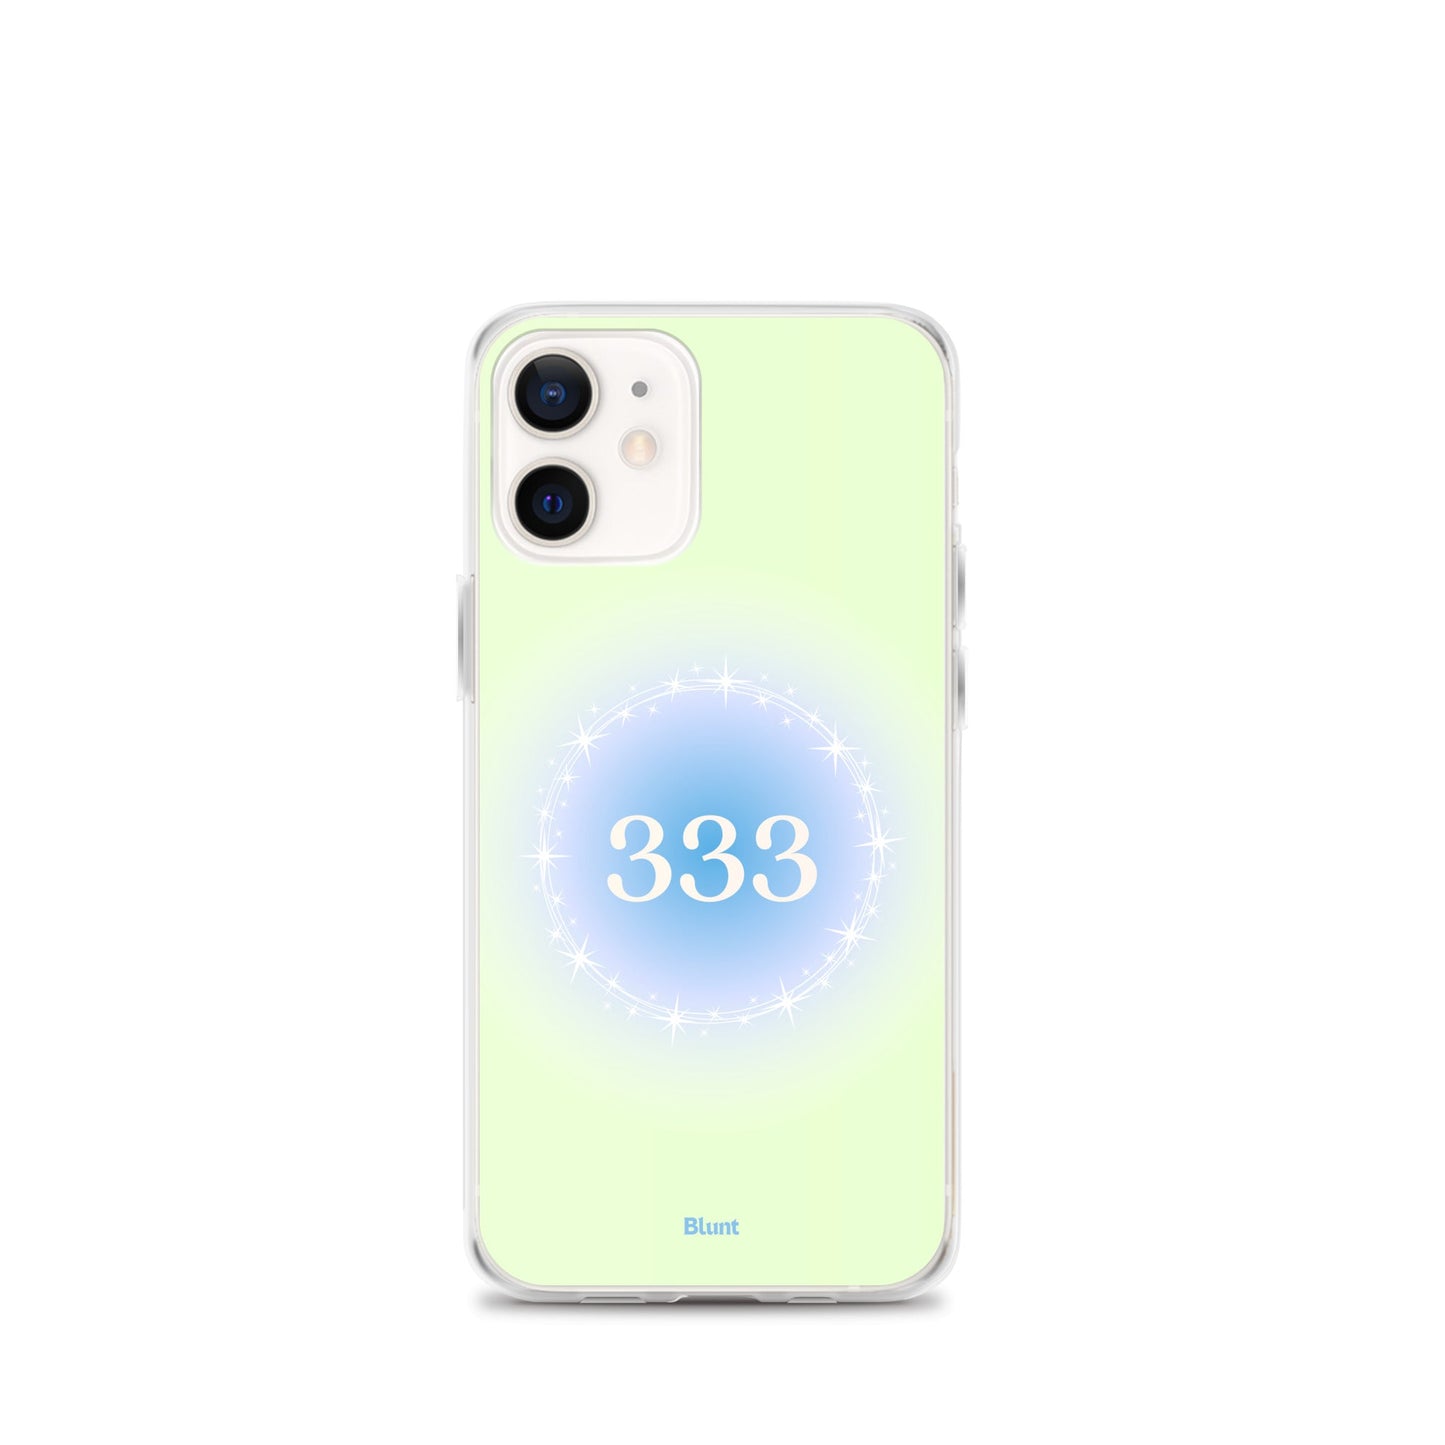 333 iPhone Case - blunt cases